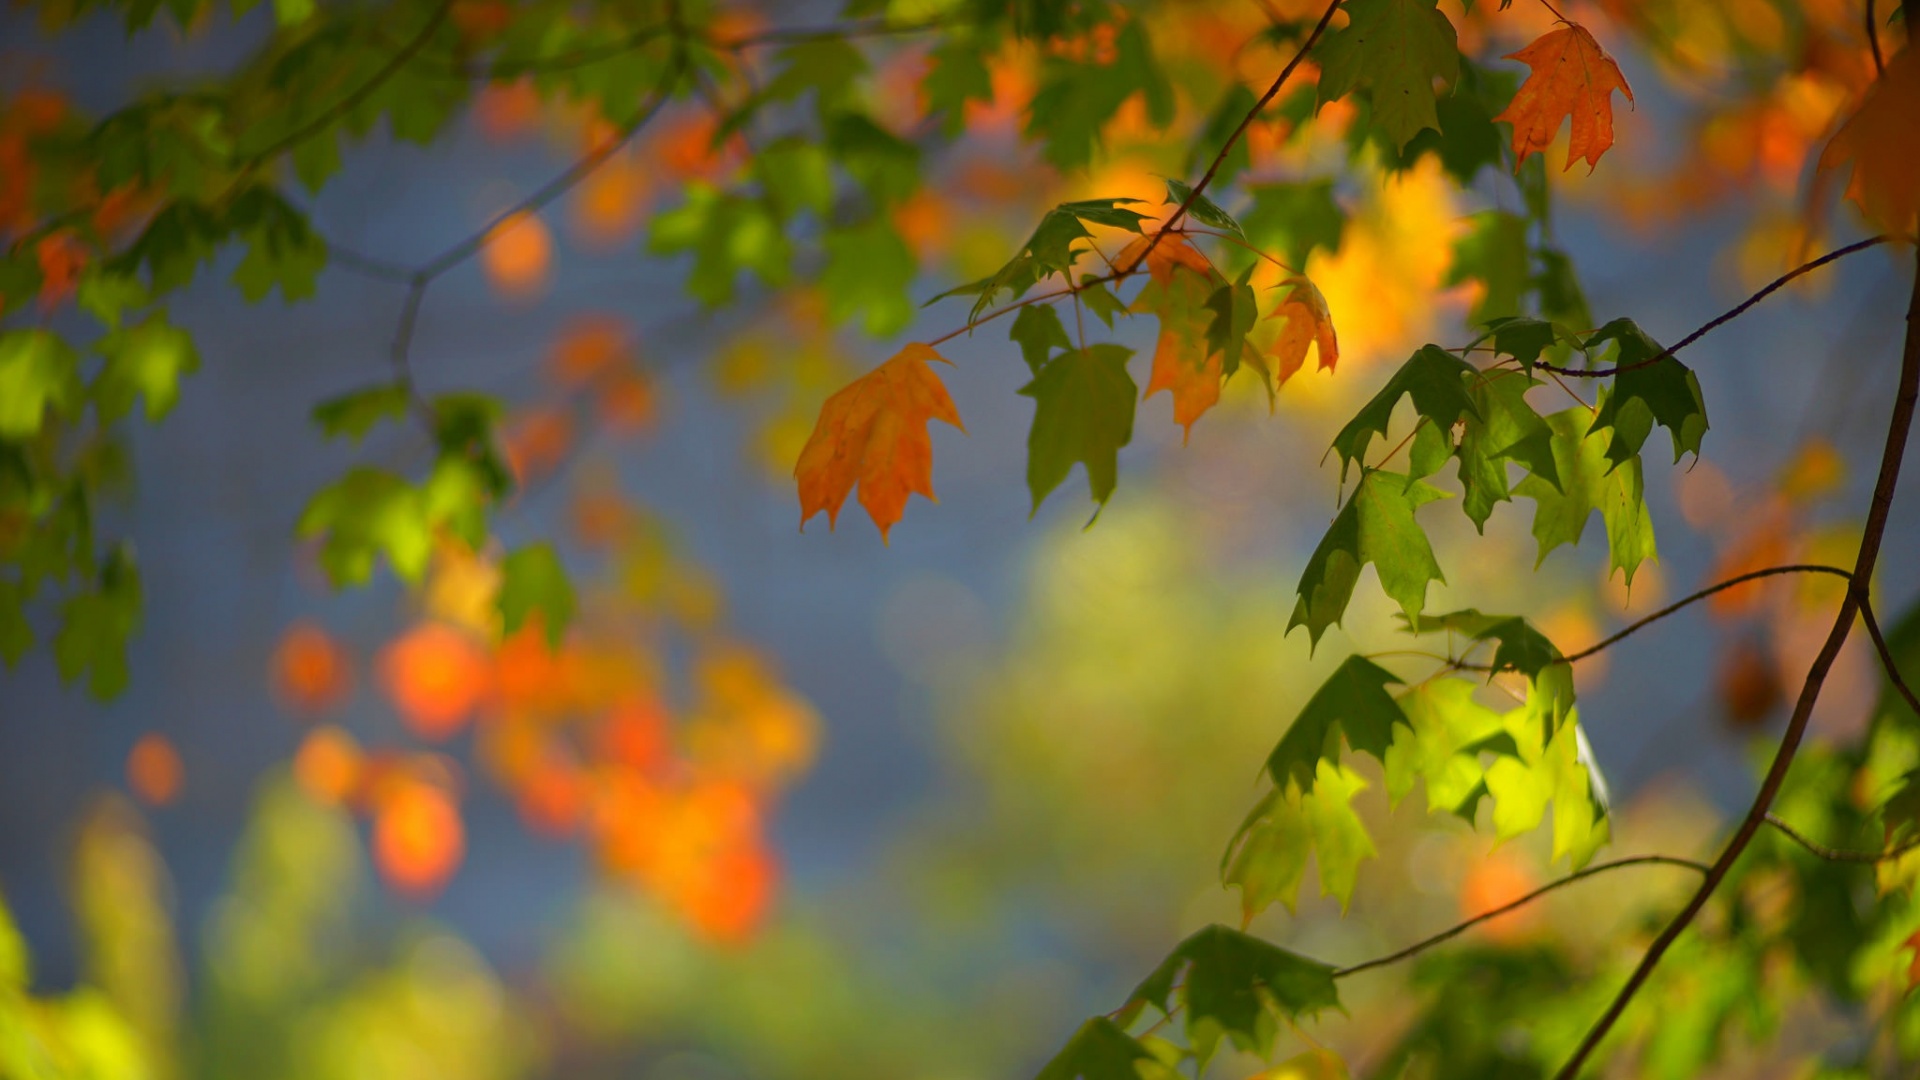 秋天枫树叶子风景桌面壁纸 风景壁纸 壁纸下载 彼岸桌面